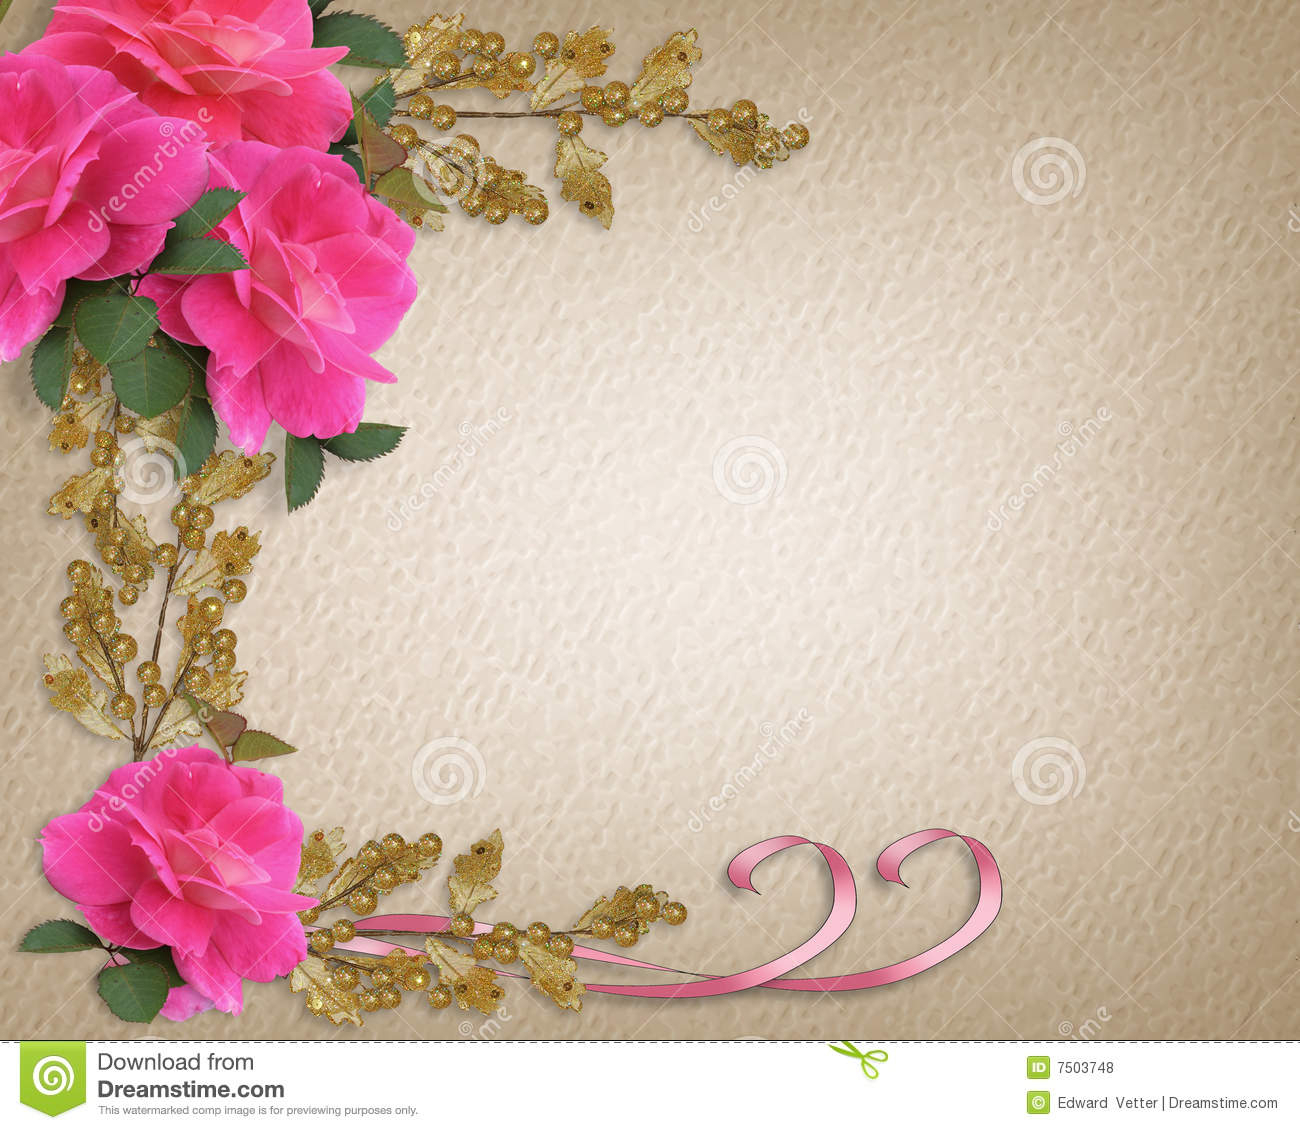 Cadre Rose D&amp;#039;Invitation De Roses Illustration Stock avec Cadre Pour Carte D Invitation